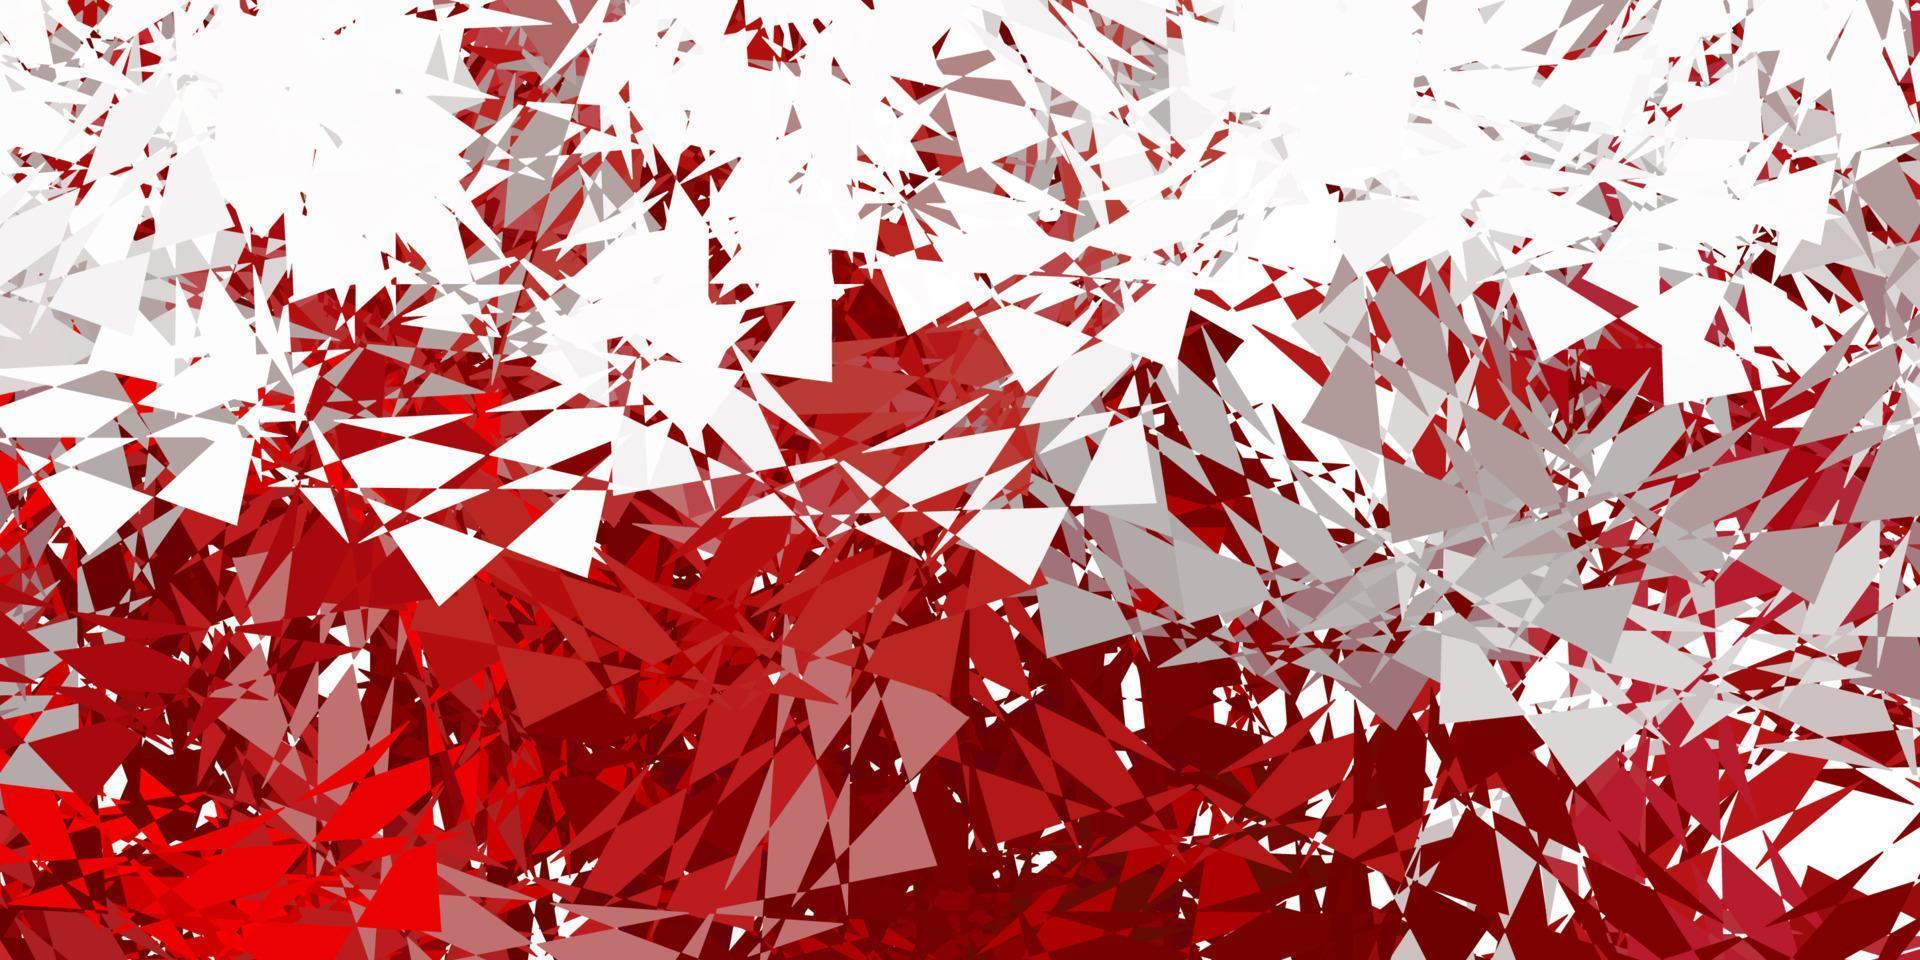 toile de fond de vecteur rouge foncé avec des triangles, des lignes.